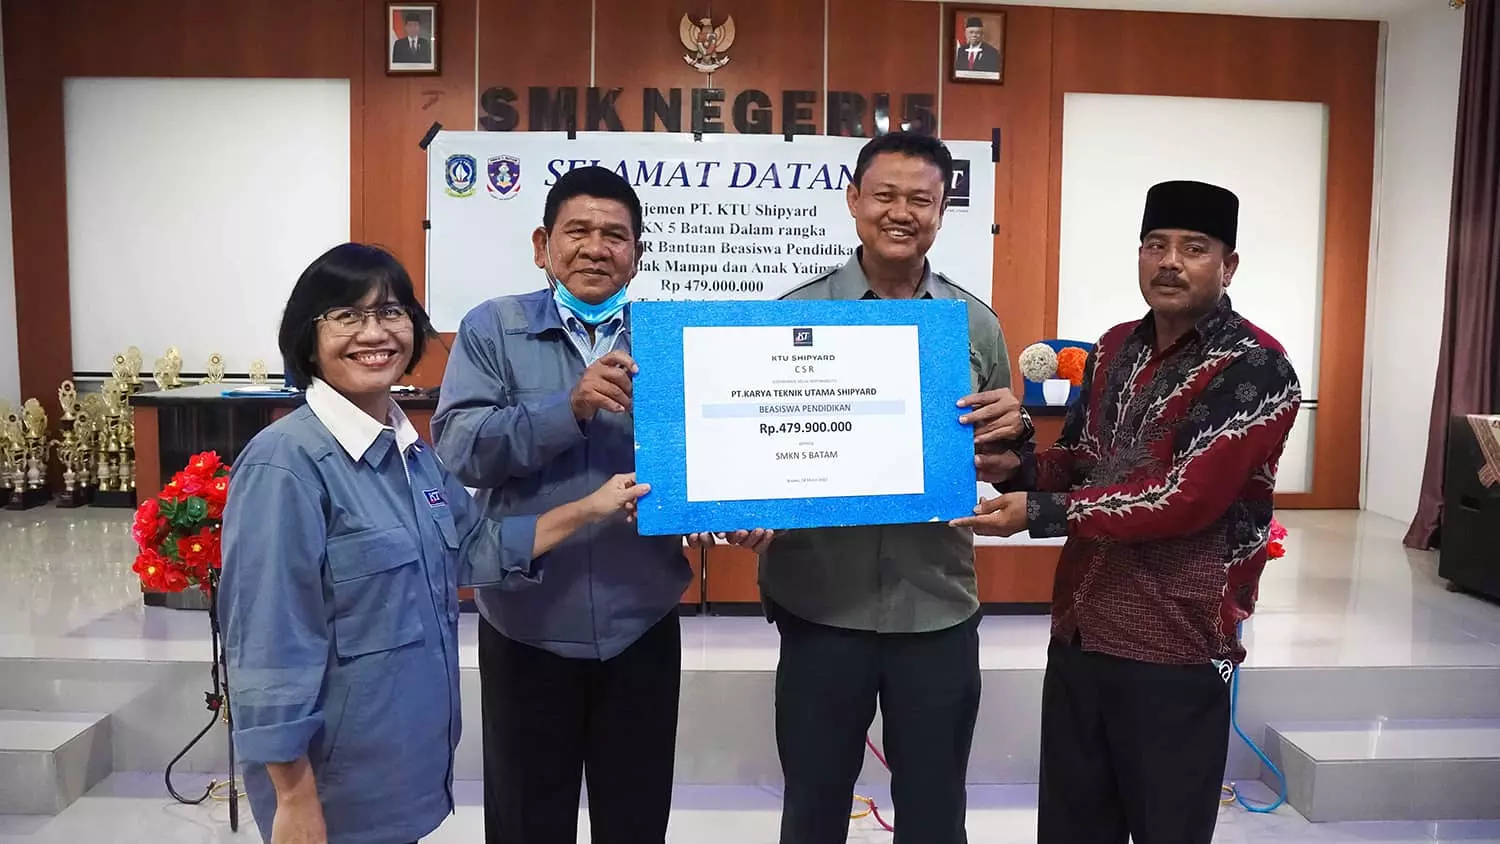 Scholarship Program for SMK 5 Batam